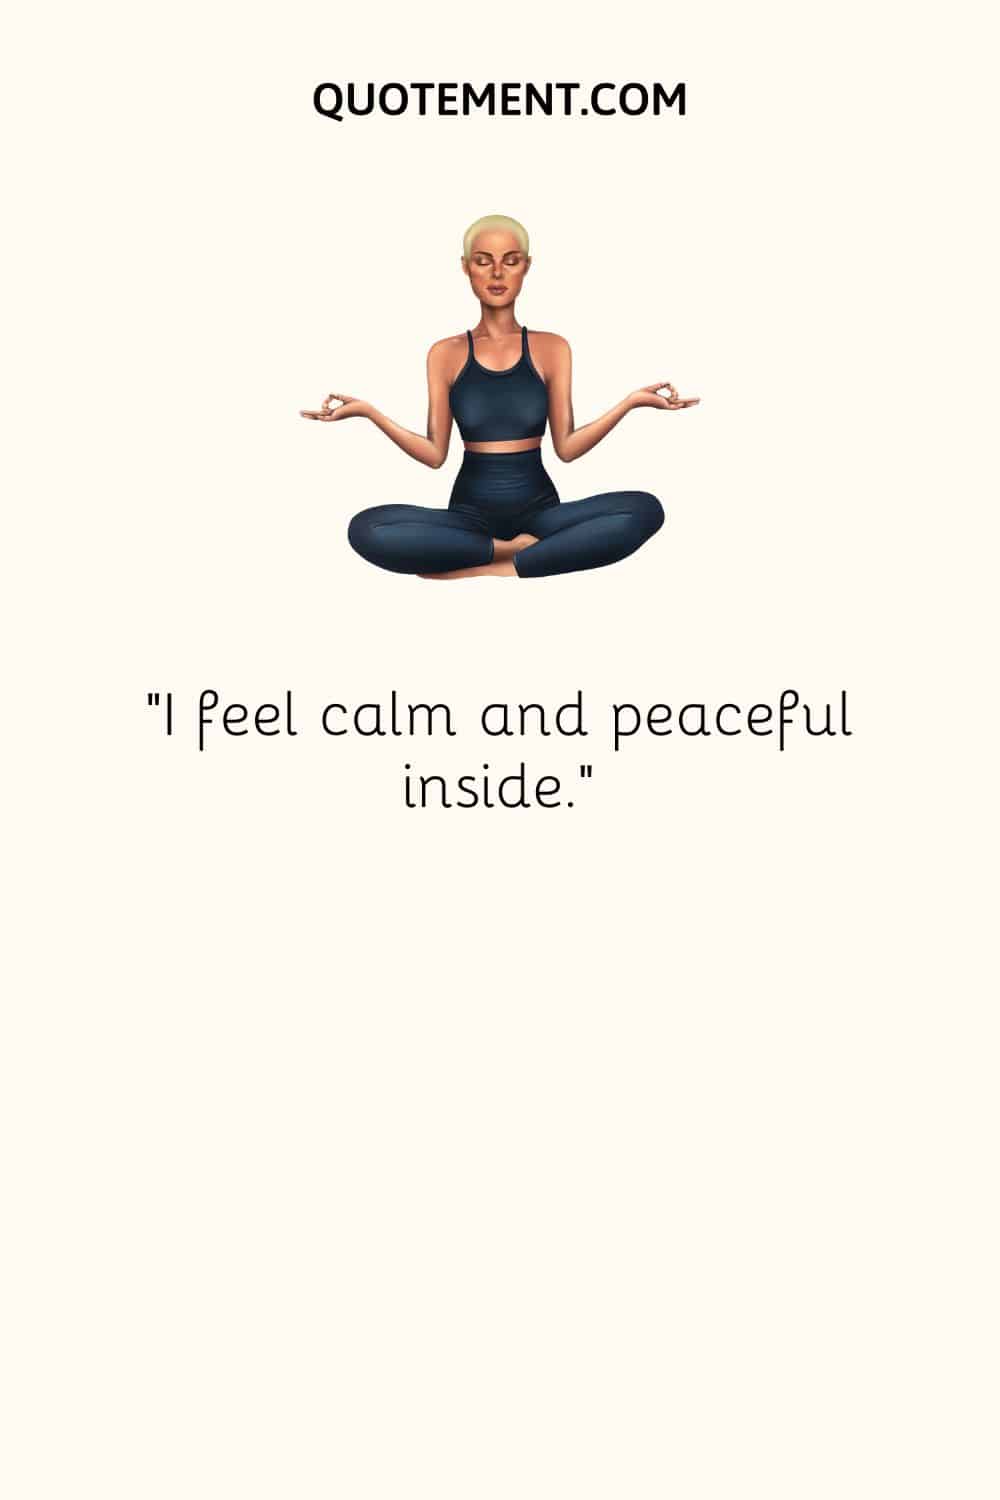 I feel calm and peaceful inside